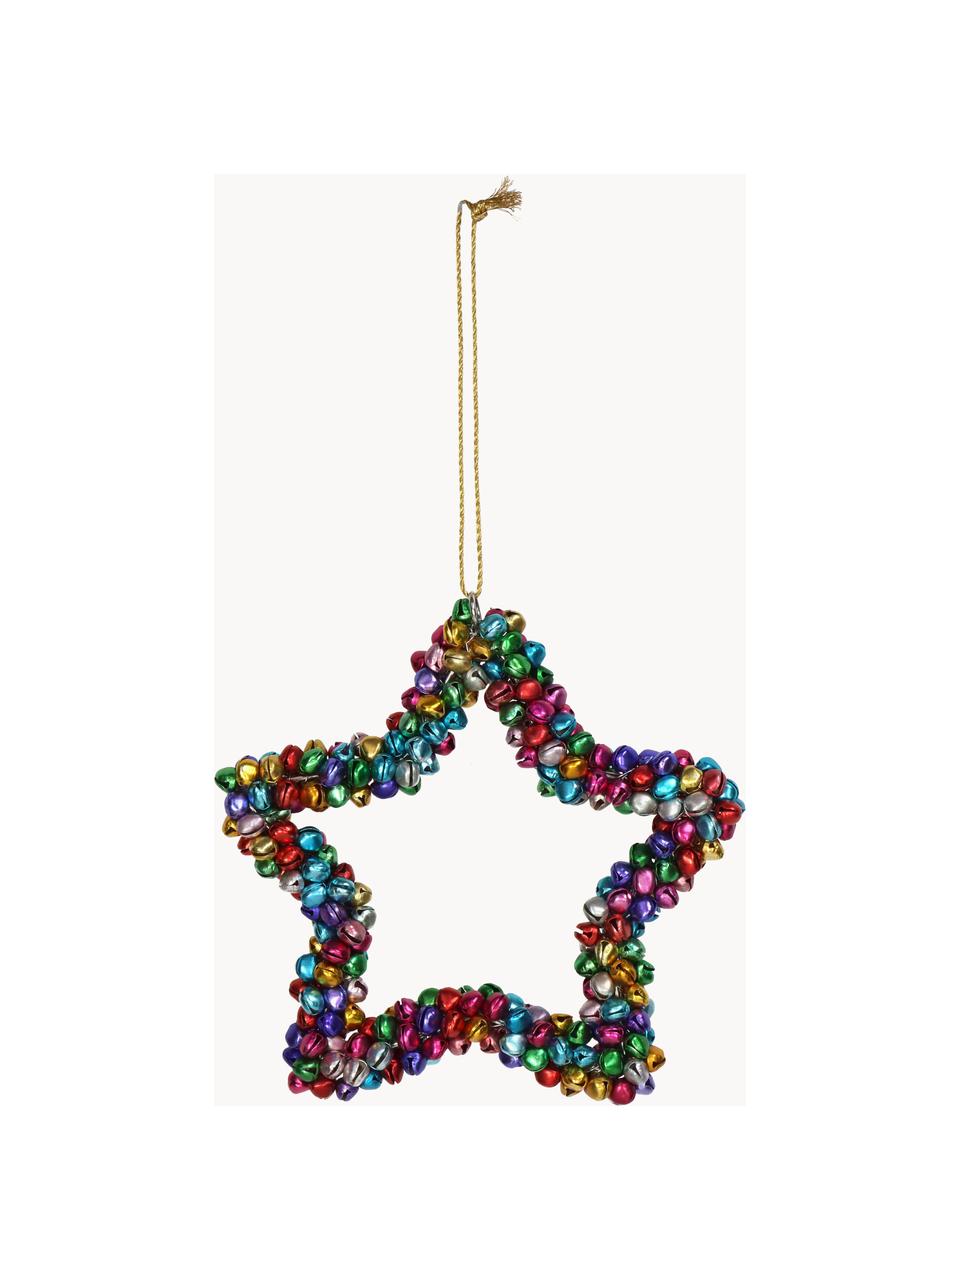 Adorno navideño con cascabeles Star, Metal recubierto, Multicolor, An 14 x Al 14 cm